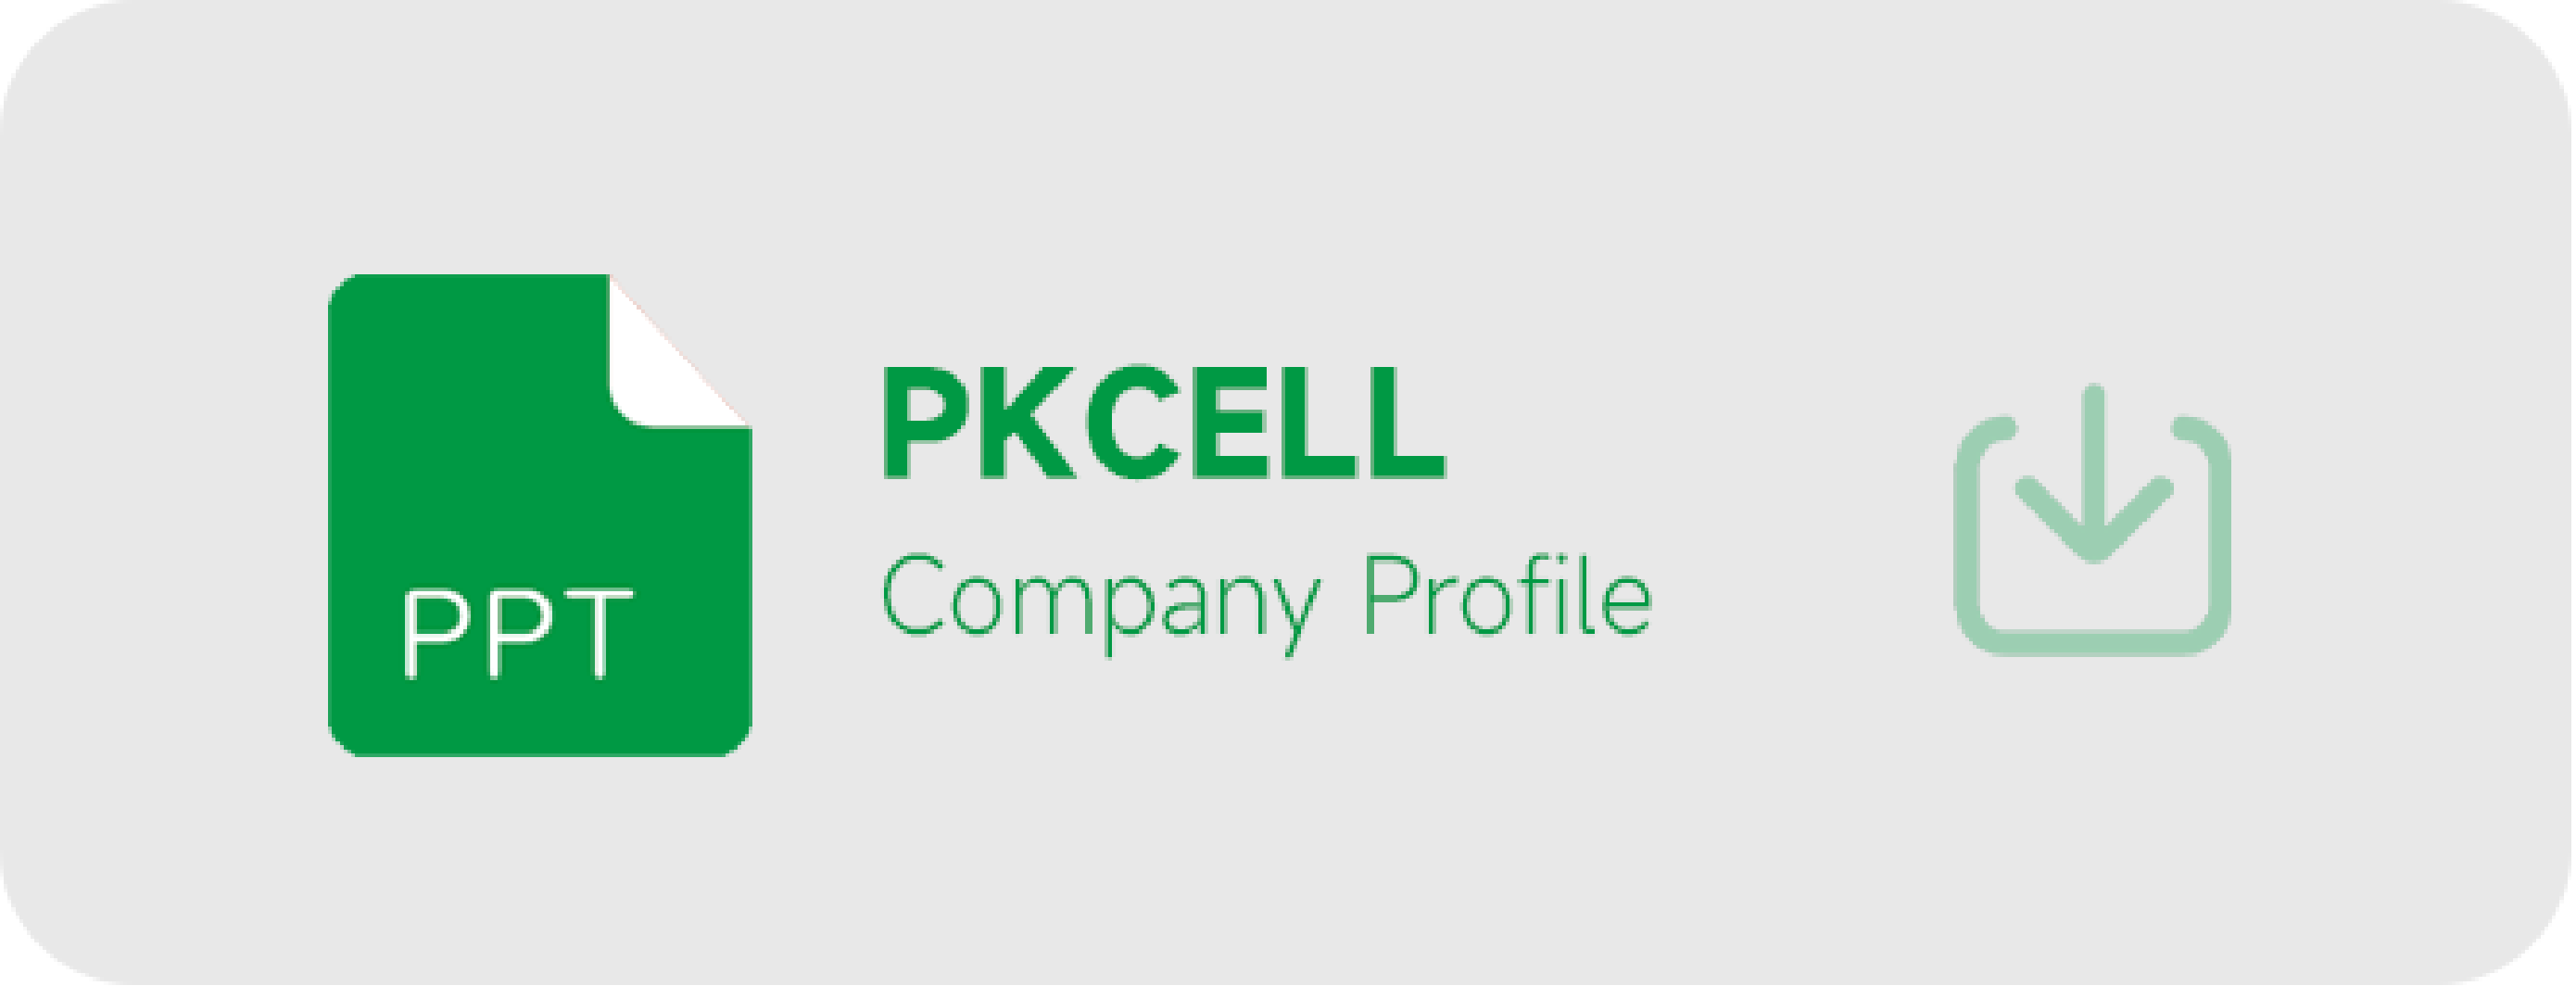 hồ sơ công ty pkcell